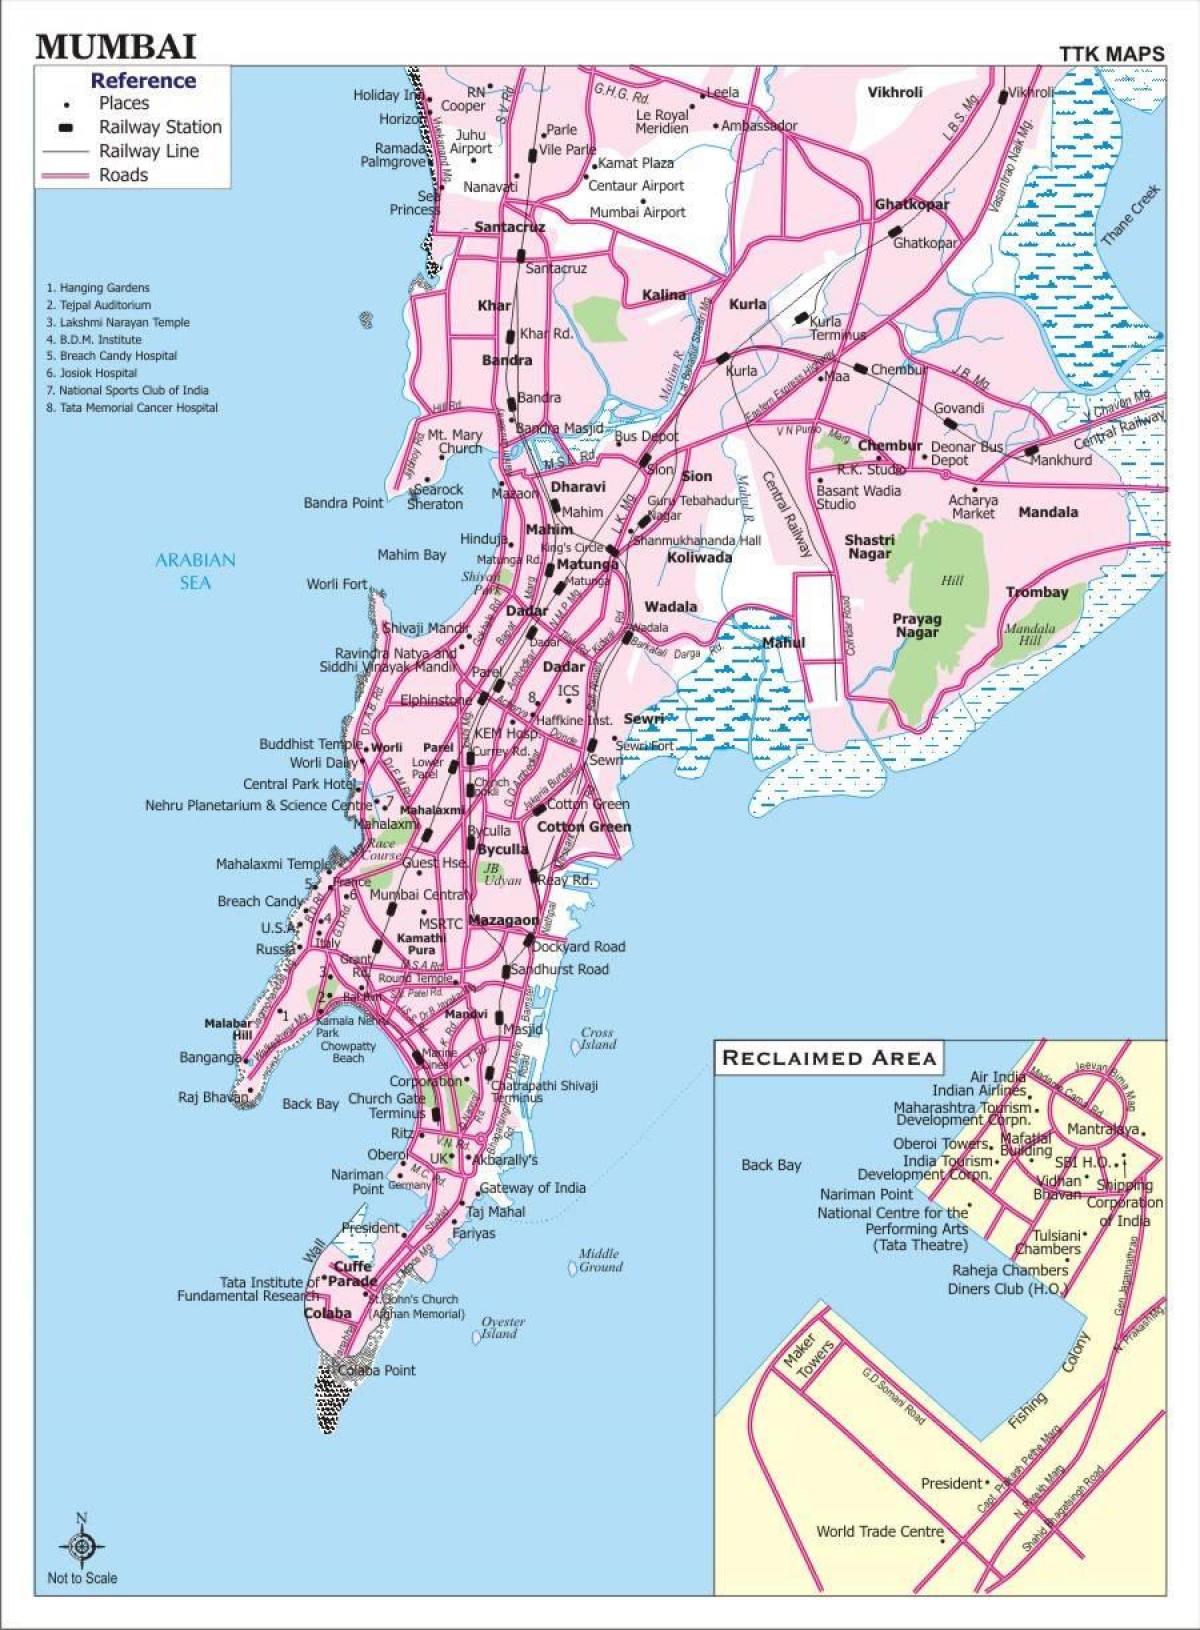 ムンバイ - ボンベイの交通機関の地図